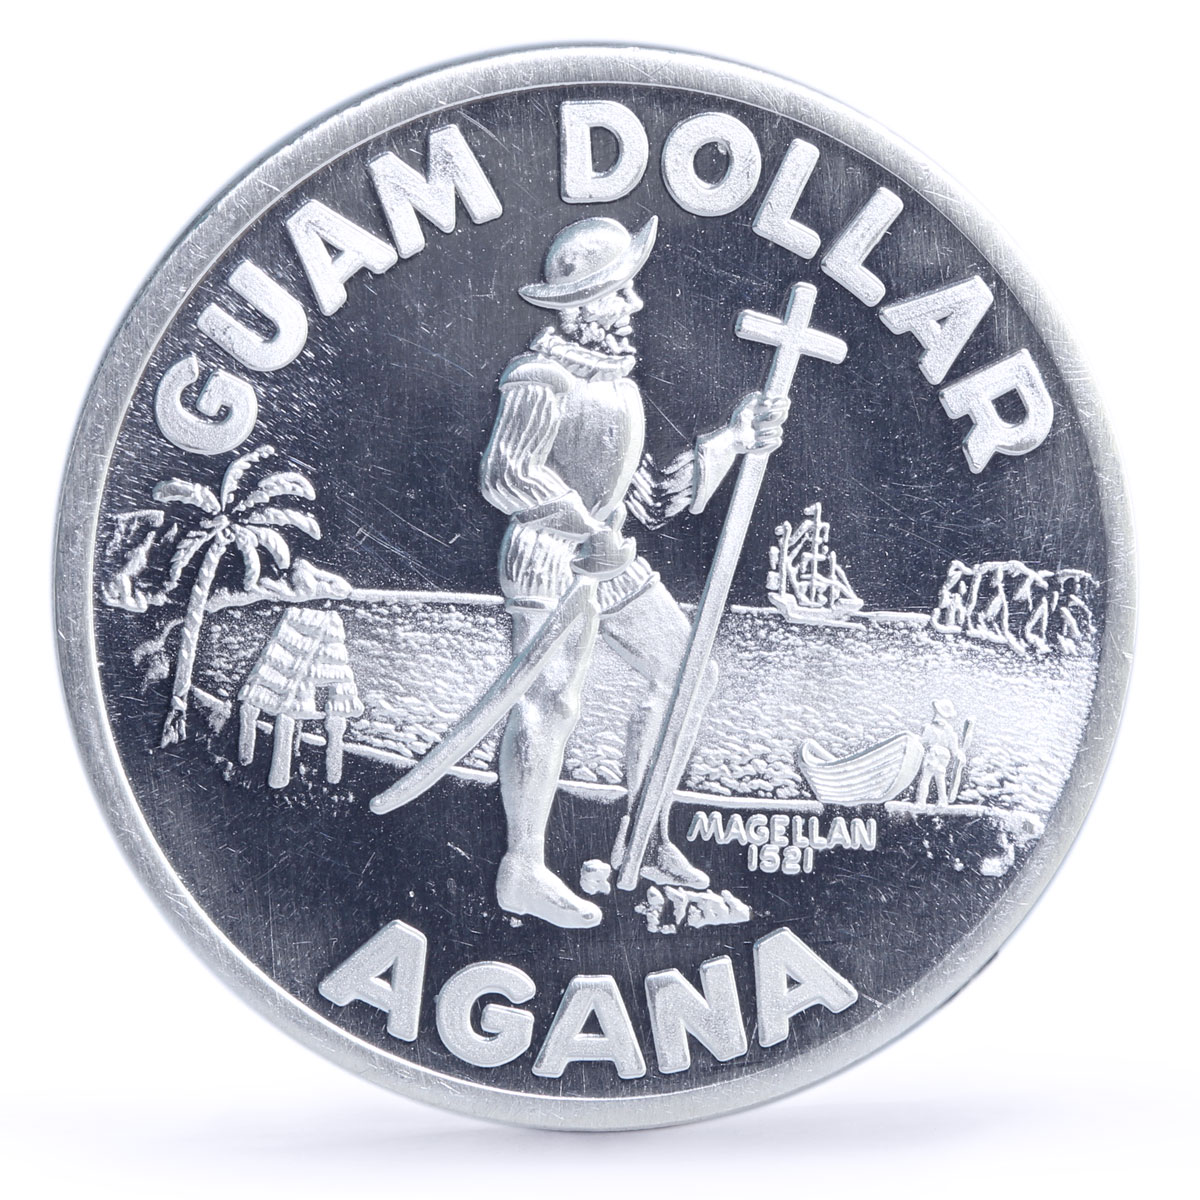 USA Guam 1 dollar Explorer Ferdinand Magellan Ship Clipper silver coin 1974